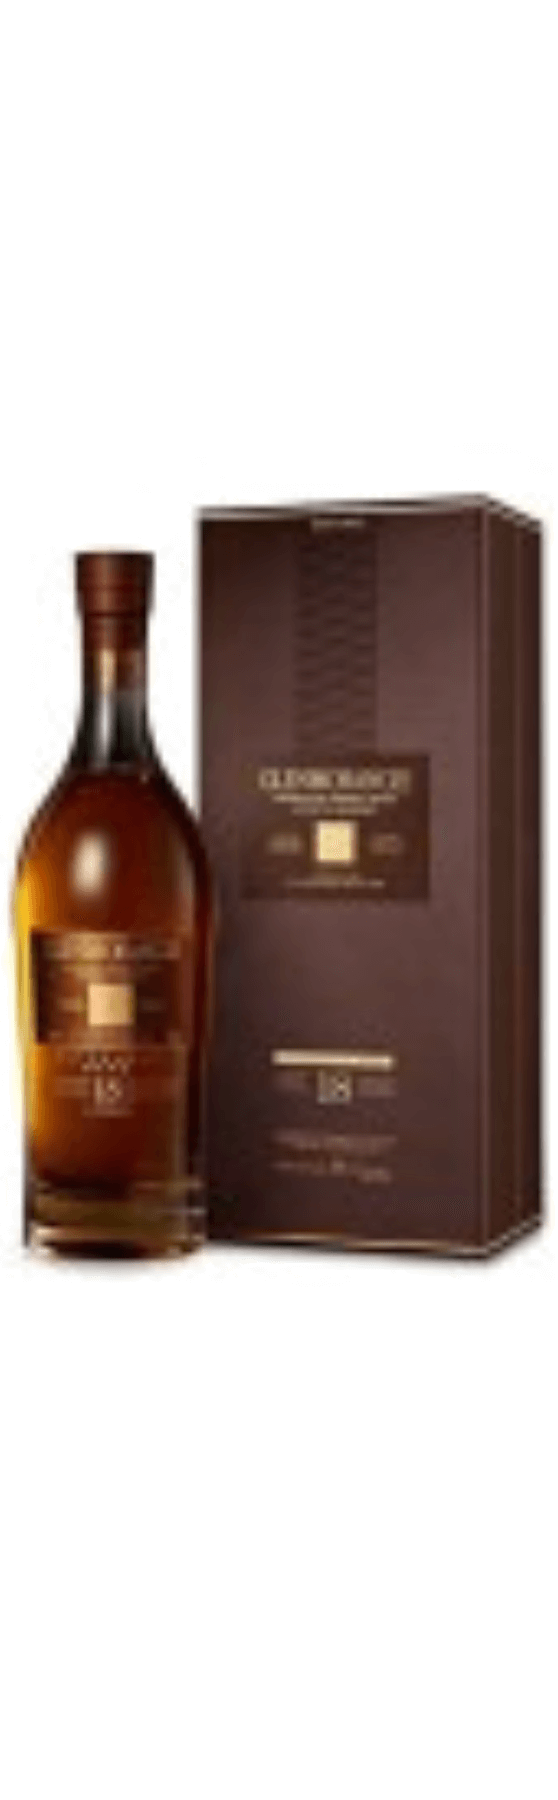 Glenmorangie 18 Years Old Highland Malt Whisky